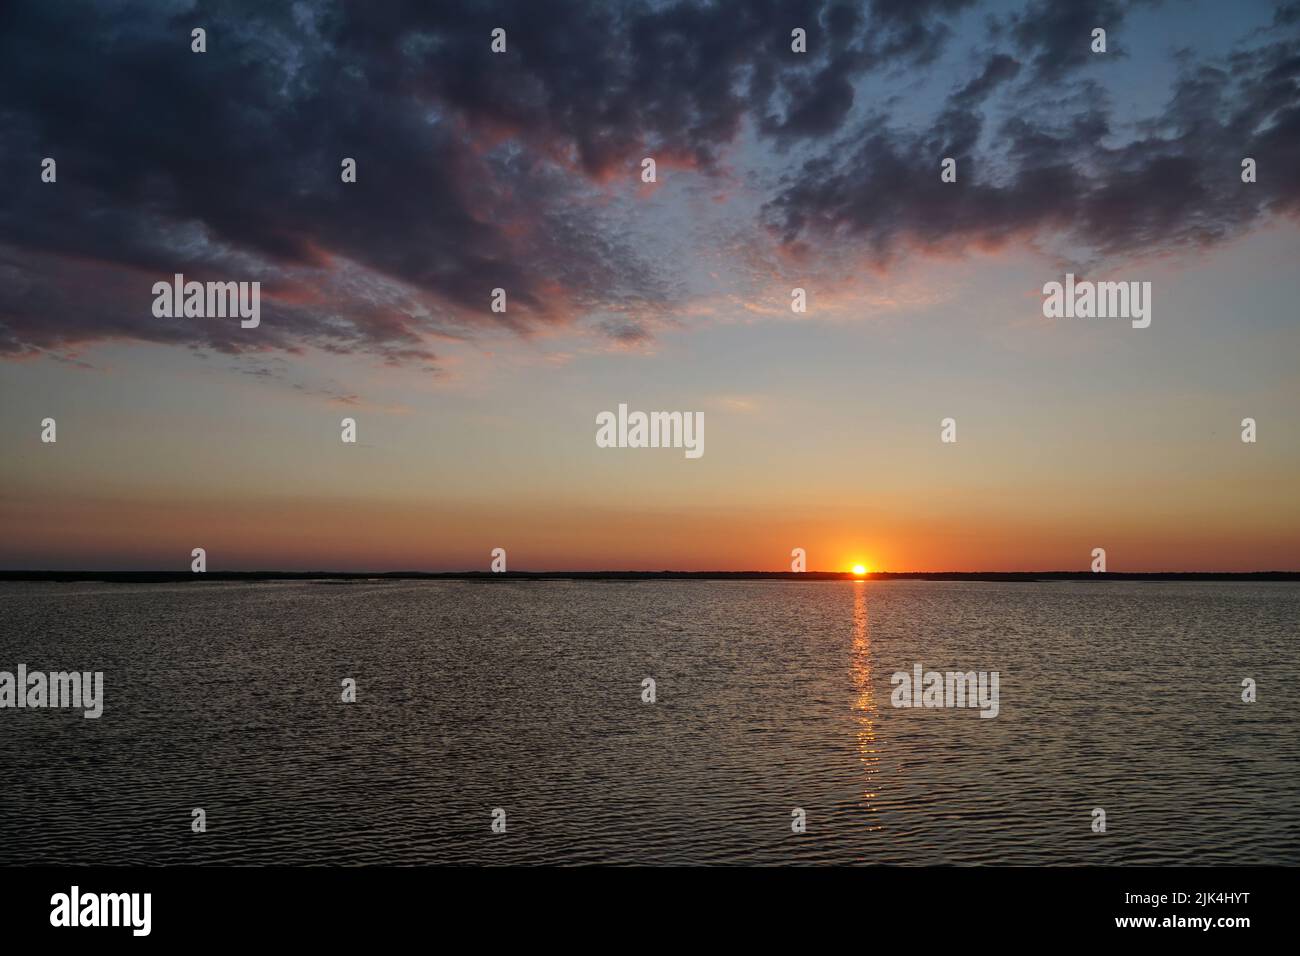 Sonnenuntergang am Łebsko-See, Woiwodschaft Pommern, Polen. Sommerabend, dramatische dunkle Wolken am Himmel, die Sonne versteckt sich hinter dem Horizont, die Refl Stockfoto